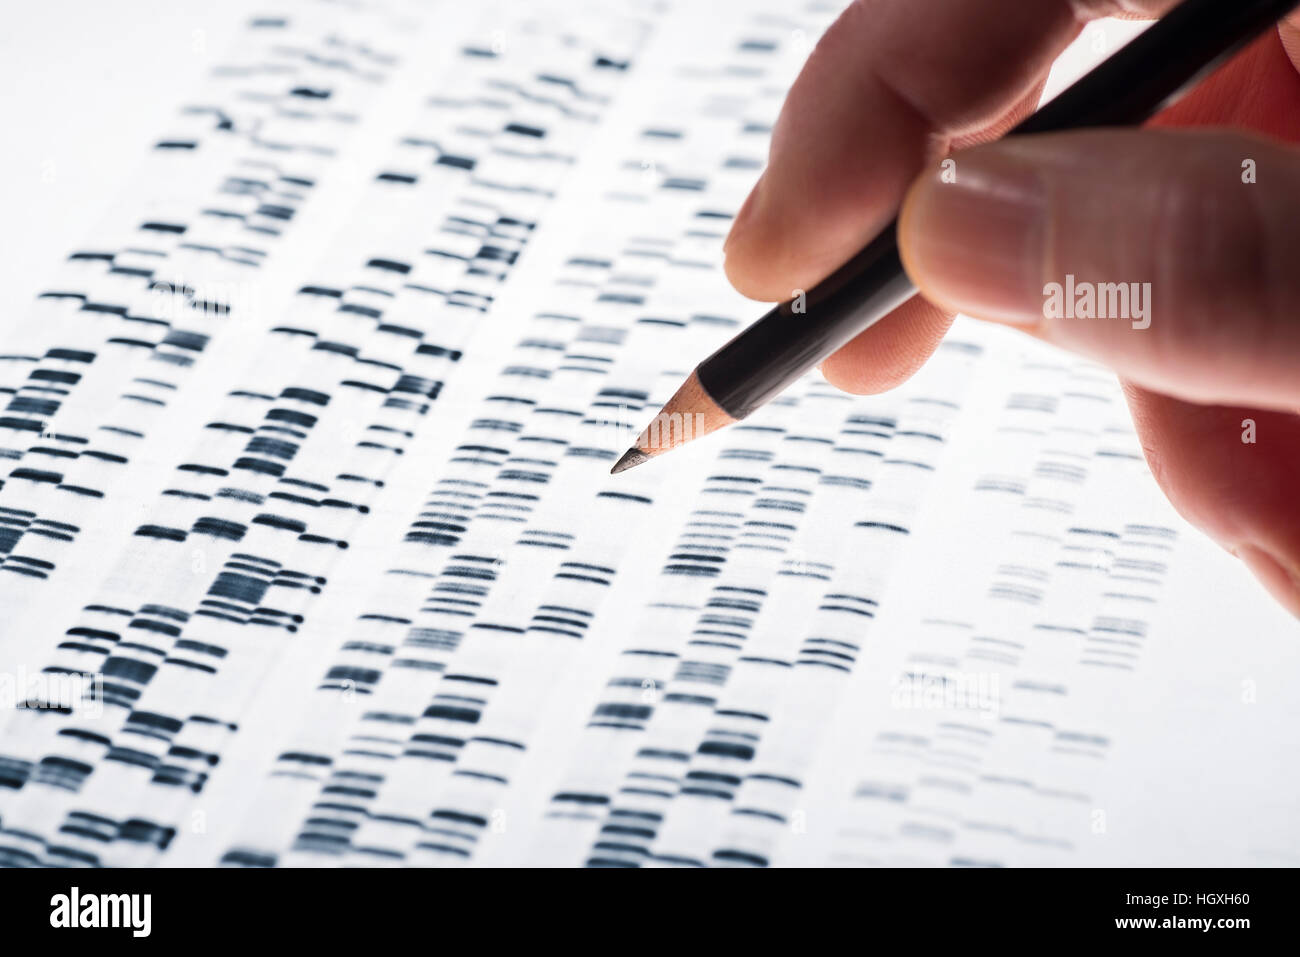 Los científicos examinaron el ADN de gel que se utiliza en la genética, la medicina, la biología, la investigación farmacéutica y la medicina forense. Foto de stock